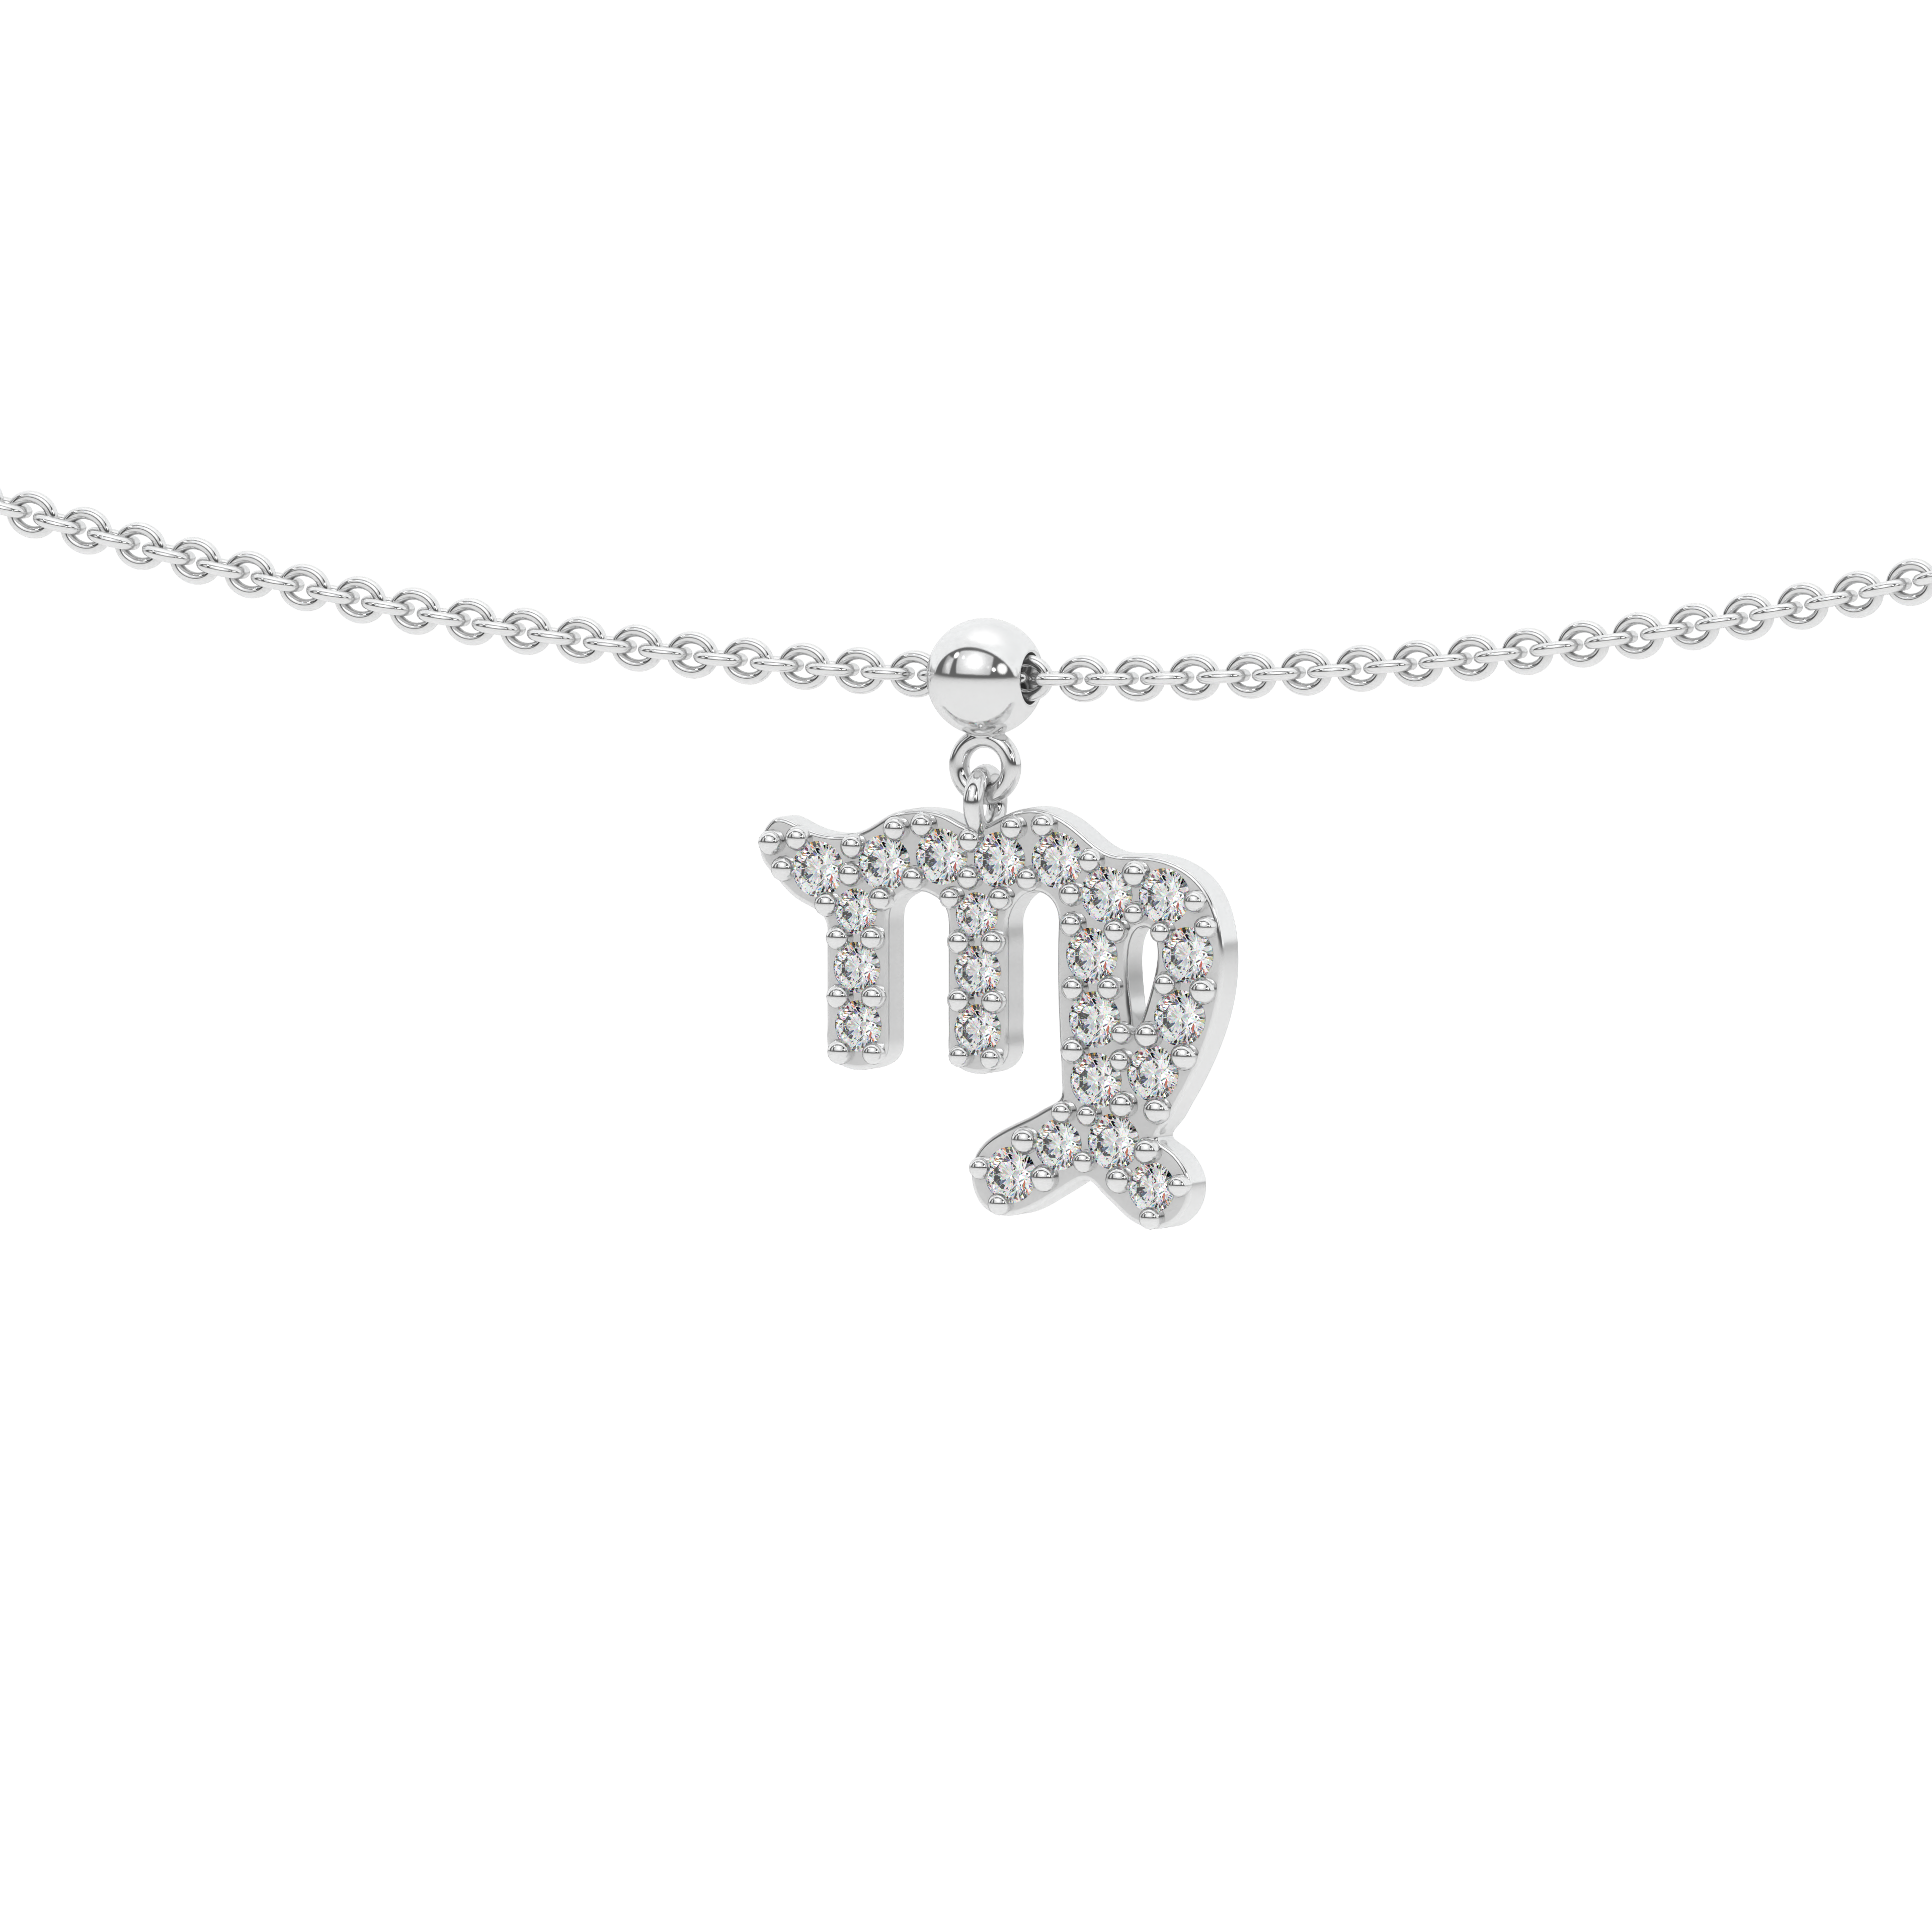 Virgo stone pave' zodiac necklace